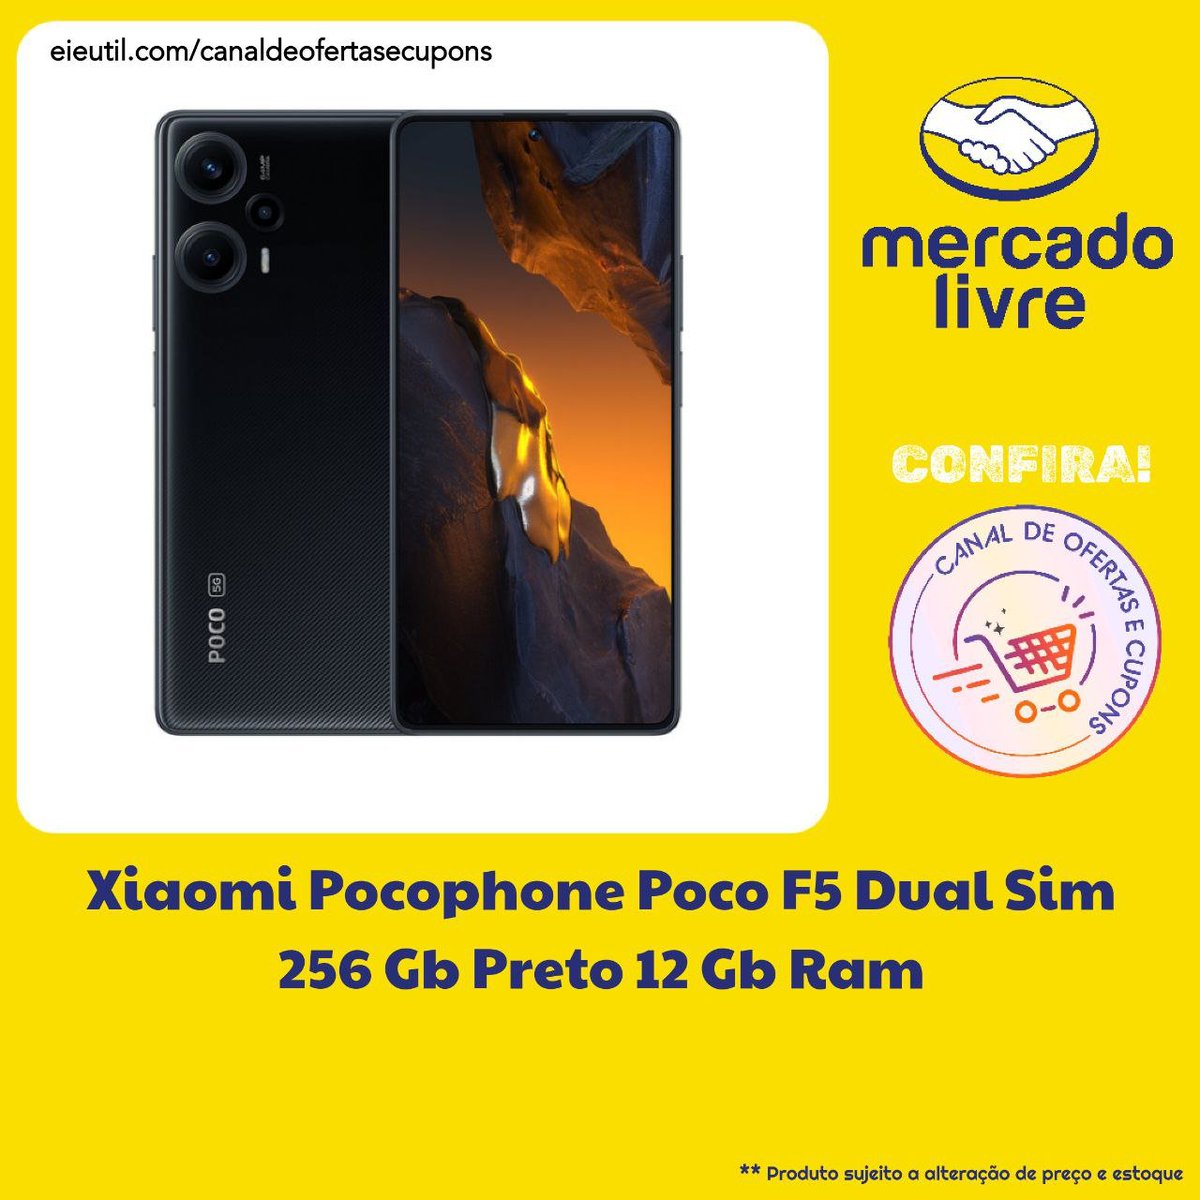 🟡 Xiaomi Pocophone Poco F5 Dual Sim 256 Gb Preto 12 Gb Ram | #MercadoLivre: ✅ R$ 2.290,00 / com cupom 🔗 COMPRE AQUI: mercadolivre.com/sec/2JBzj37 🎫 CUPOM: VALE225 / cartão mercado pago